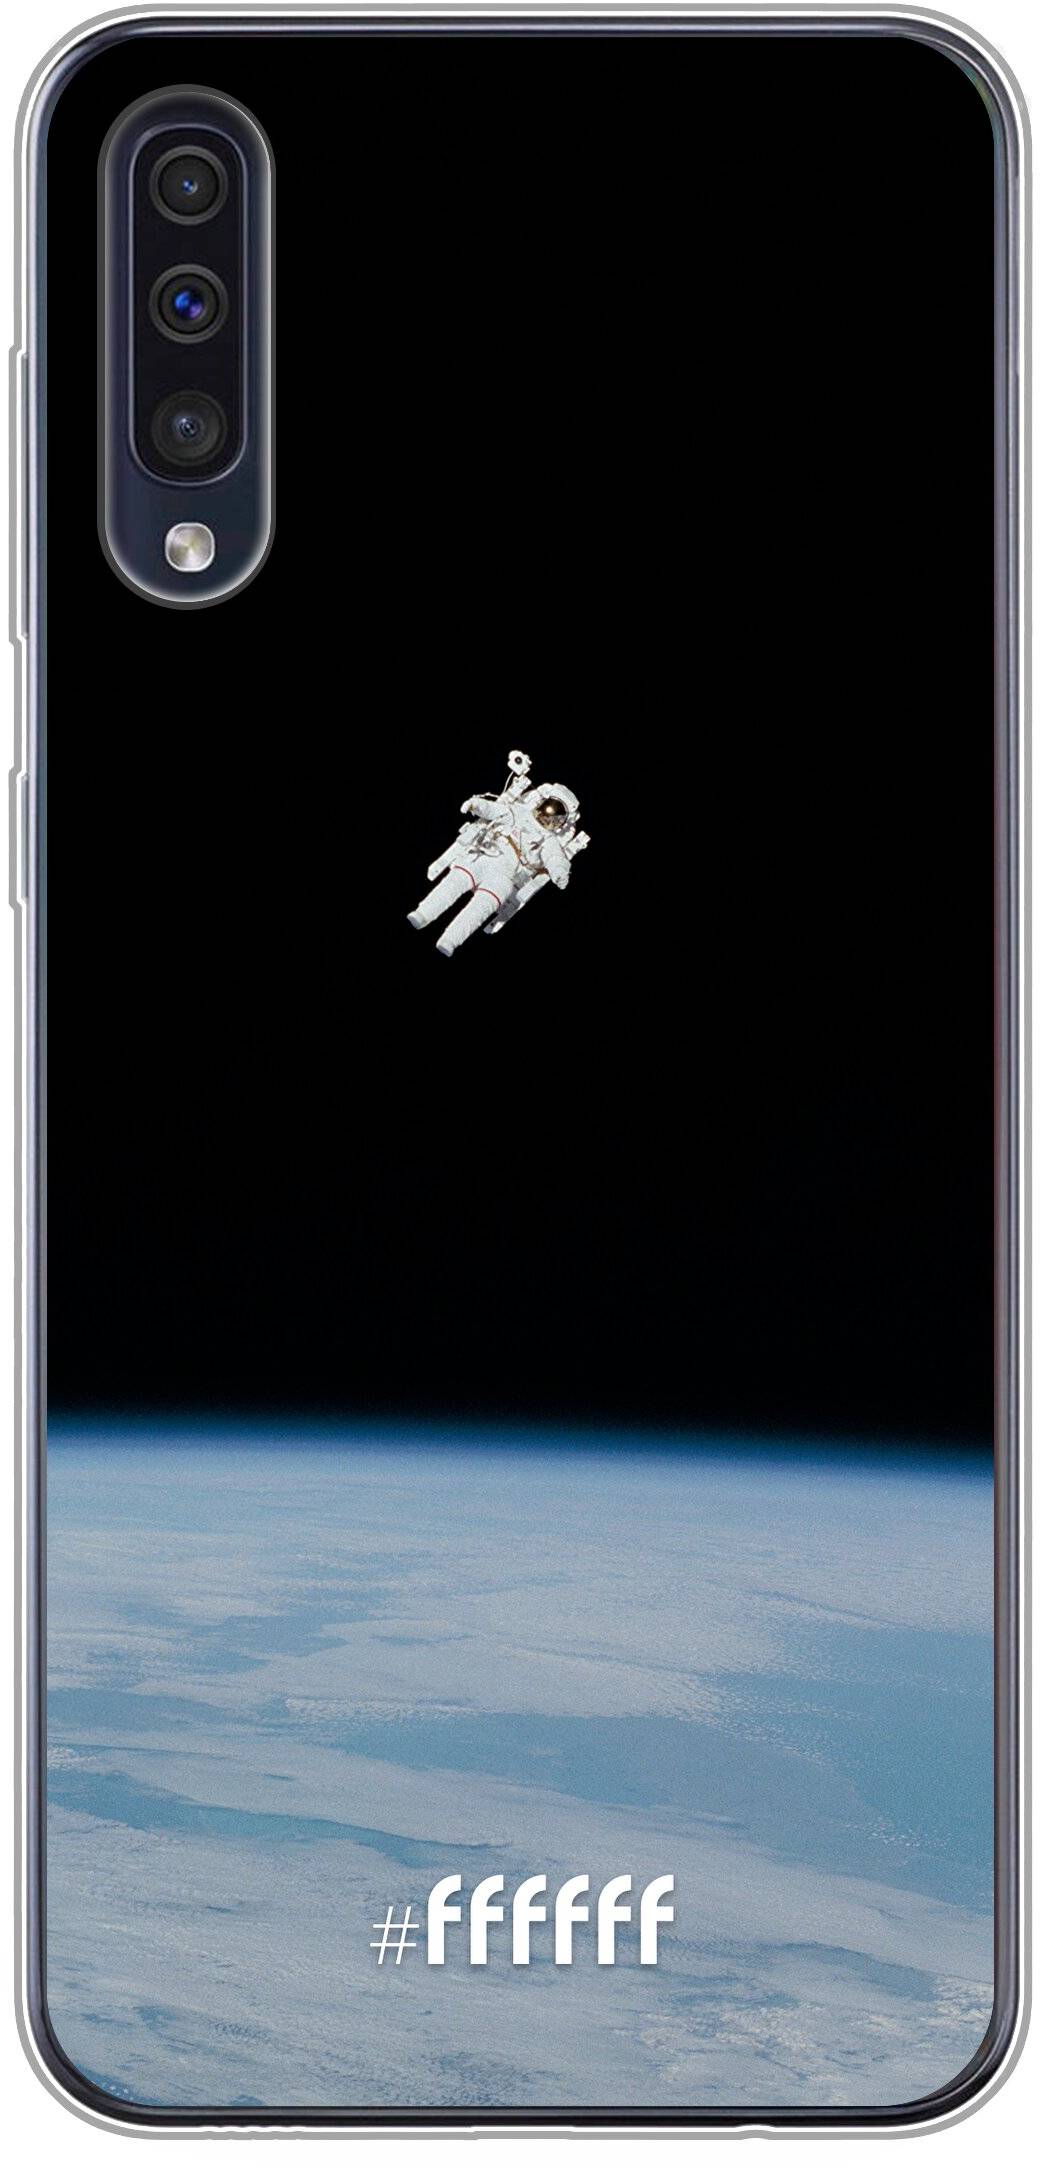 Spacewalk Galaxy A50s